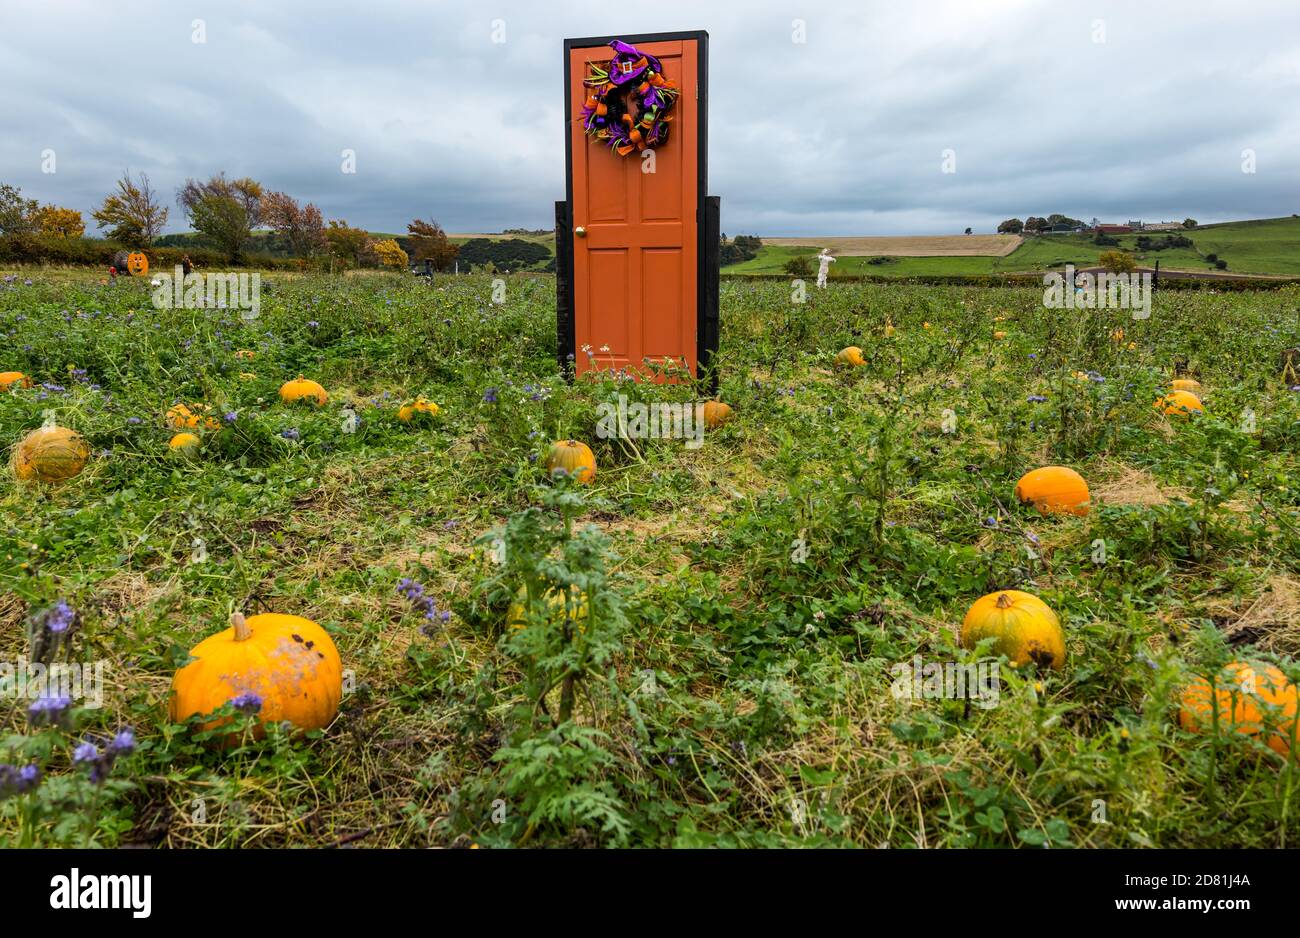 Porte originale sur le thème de l'Halloween dans le champ de citrouille, Kilduff Farm, East Lothian, Écosse, Royaume-Uni Banque D'Images